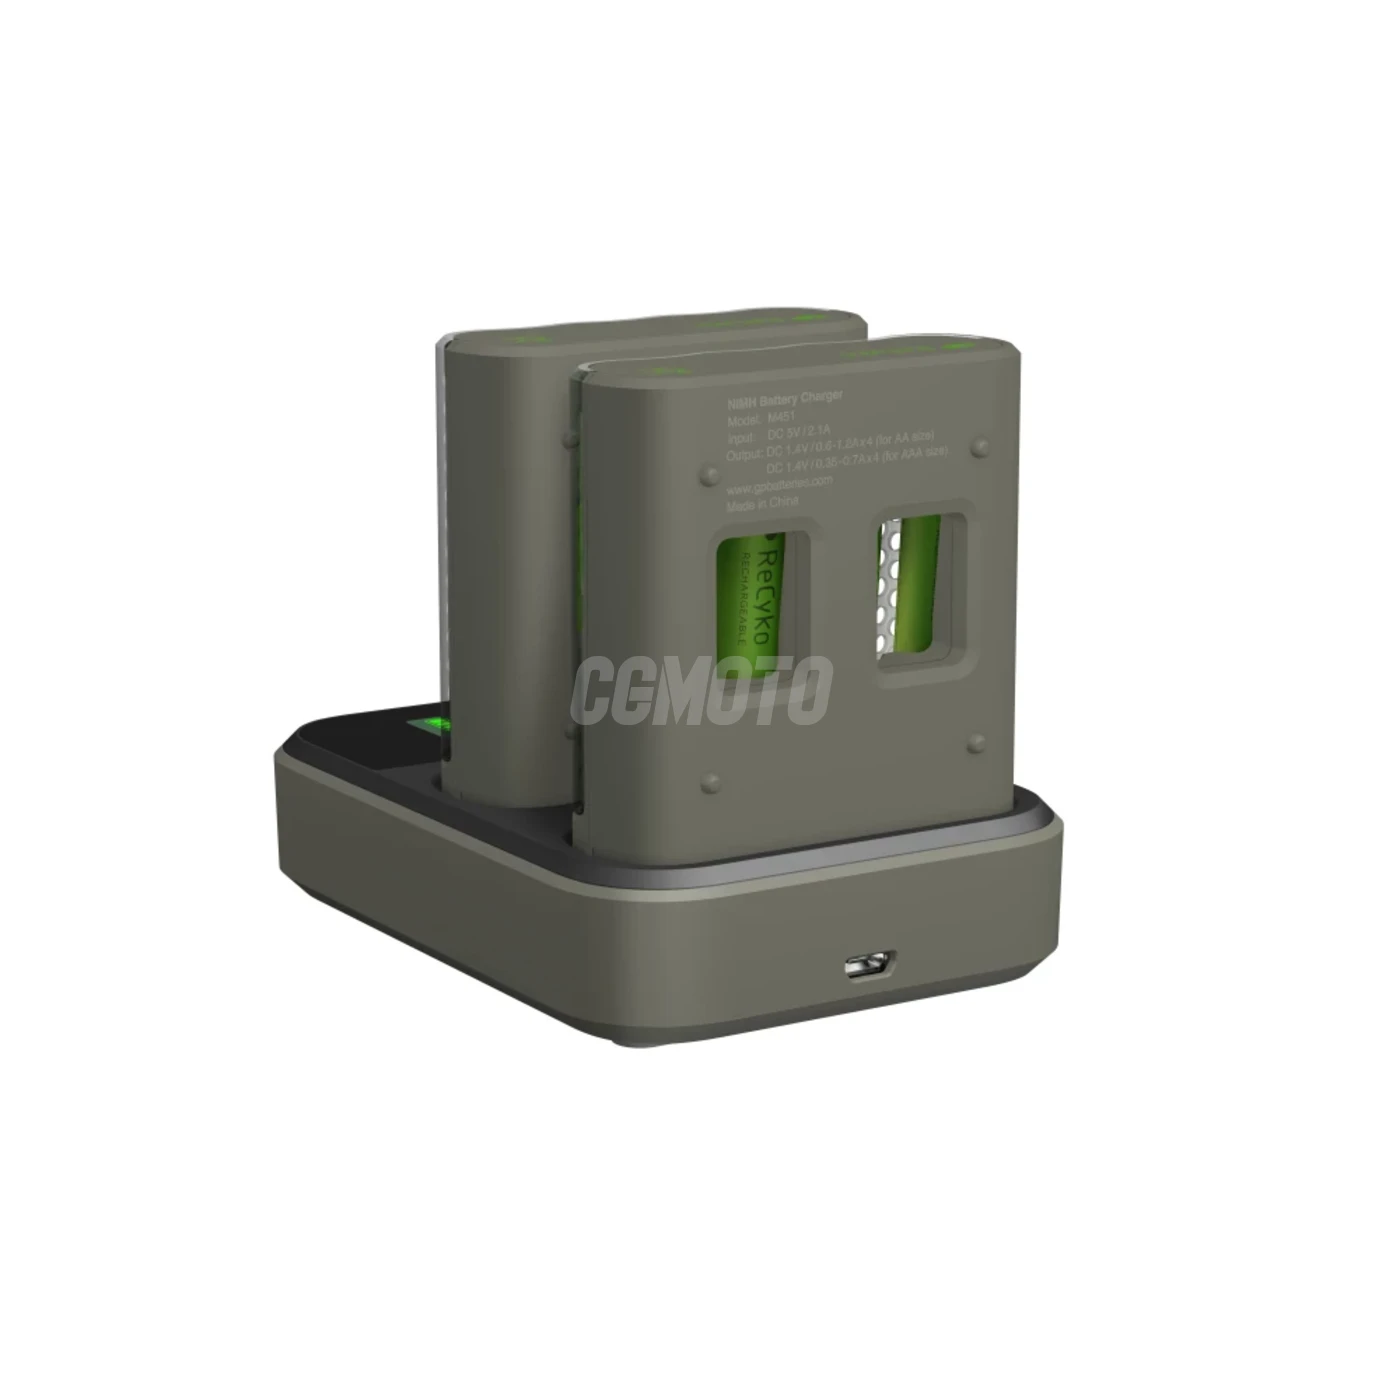 Caricatore rapido 2-4 ore M451 USB + 8 batterie AA 2600mAh + Dock D851